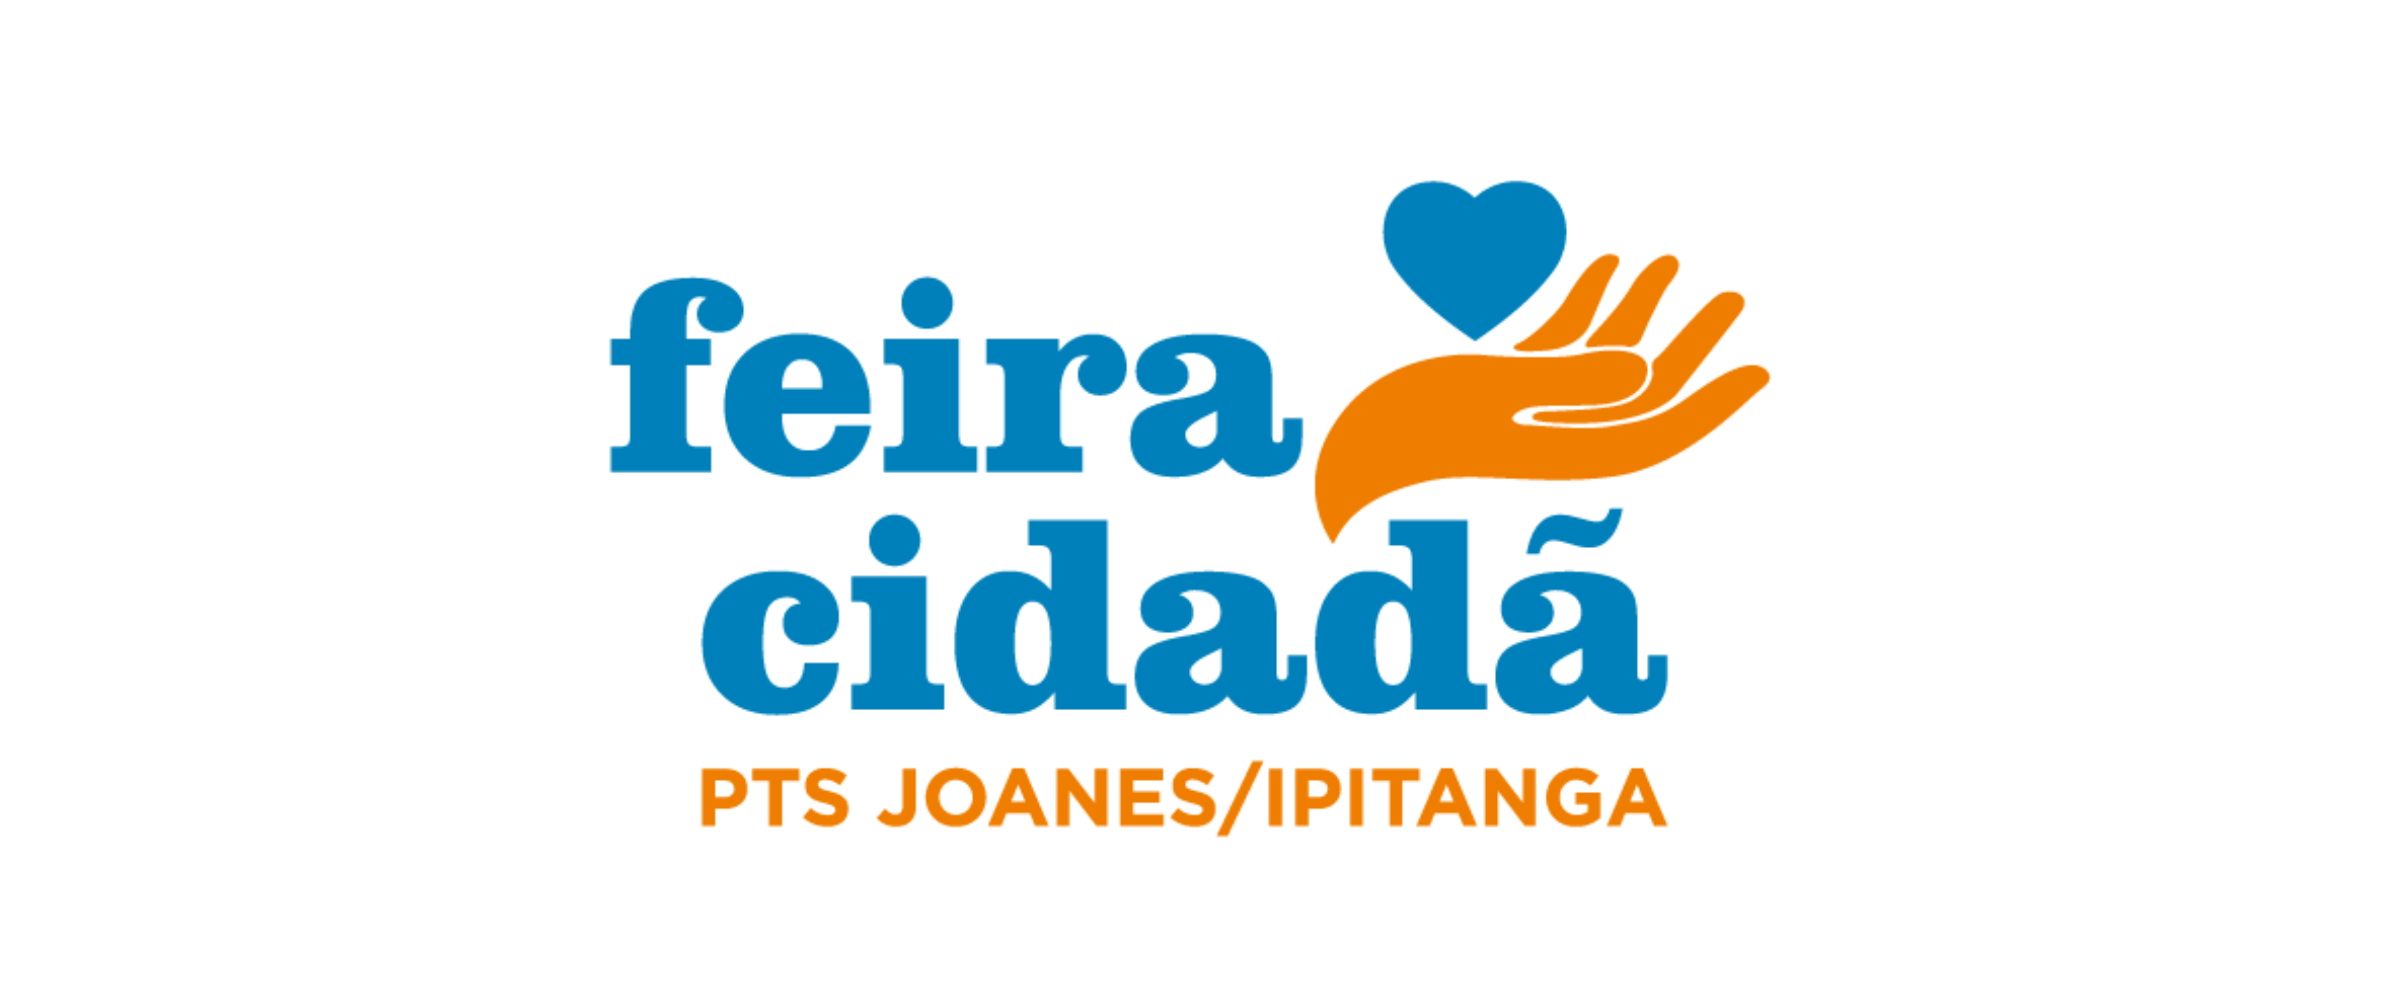 Conder promove Feira Cidadã em Lauro de Freitas nesta quinta-feira (30/11)